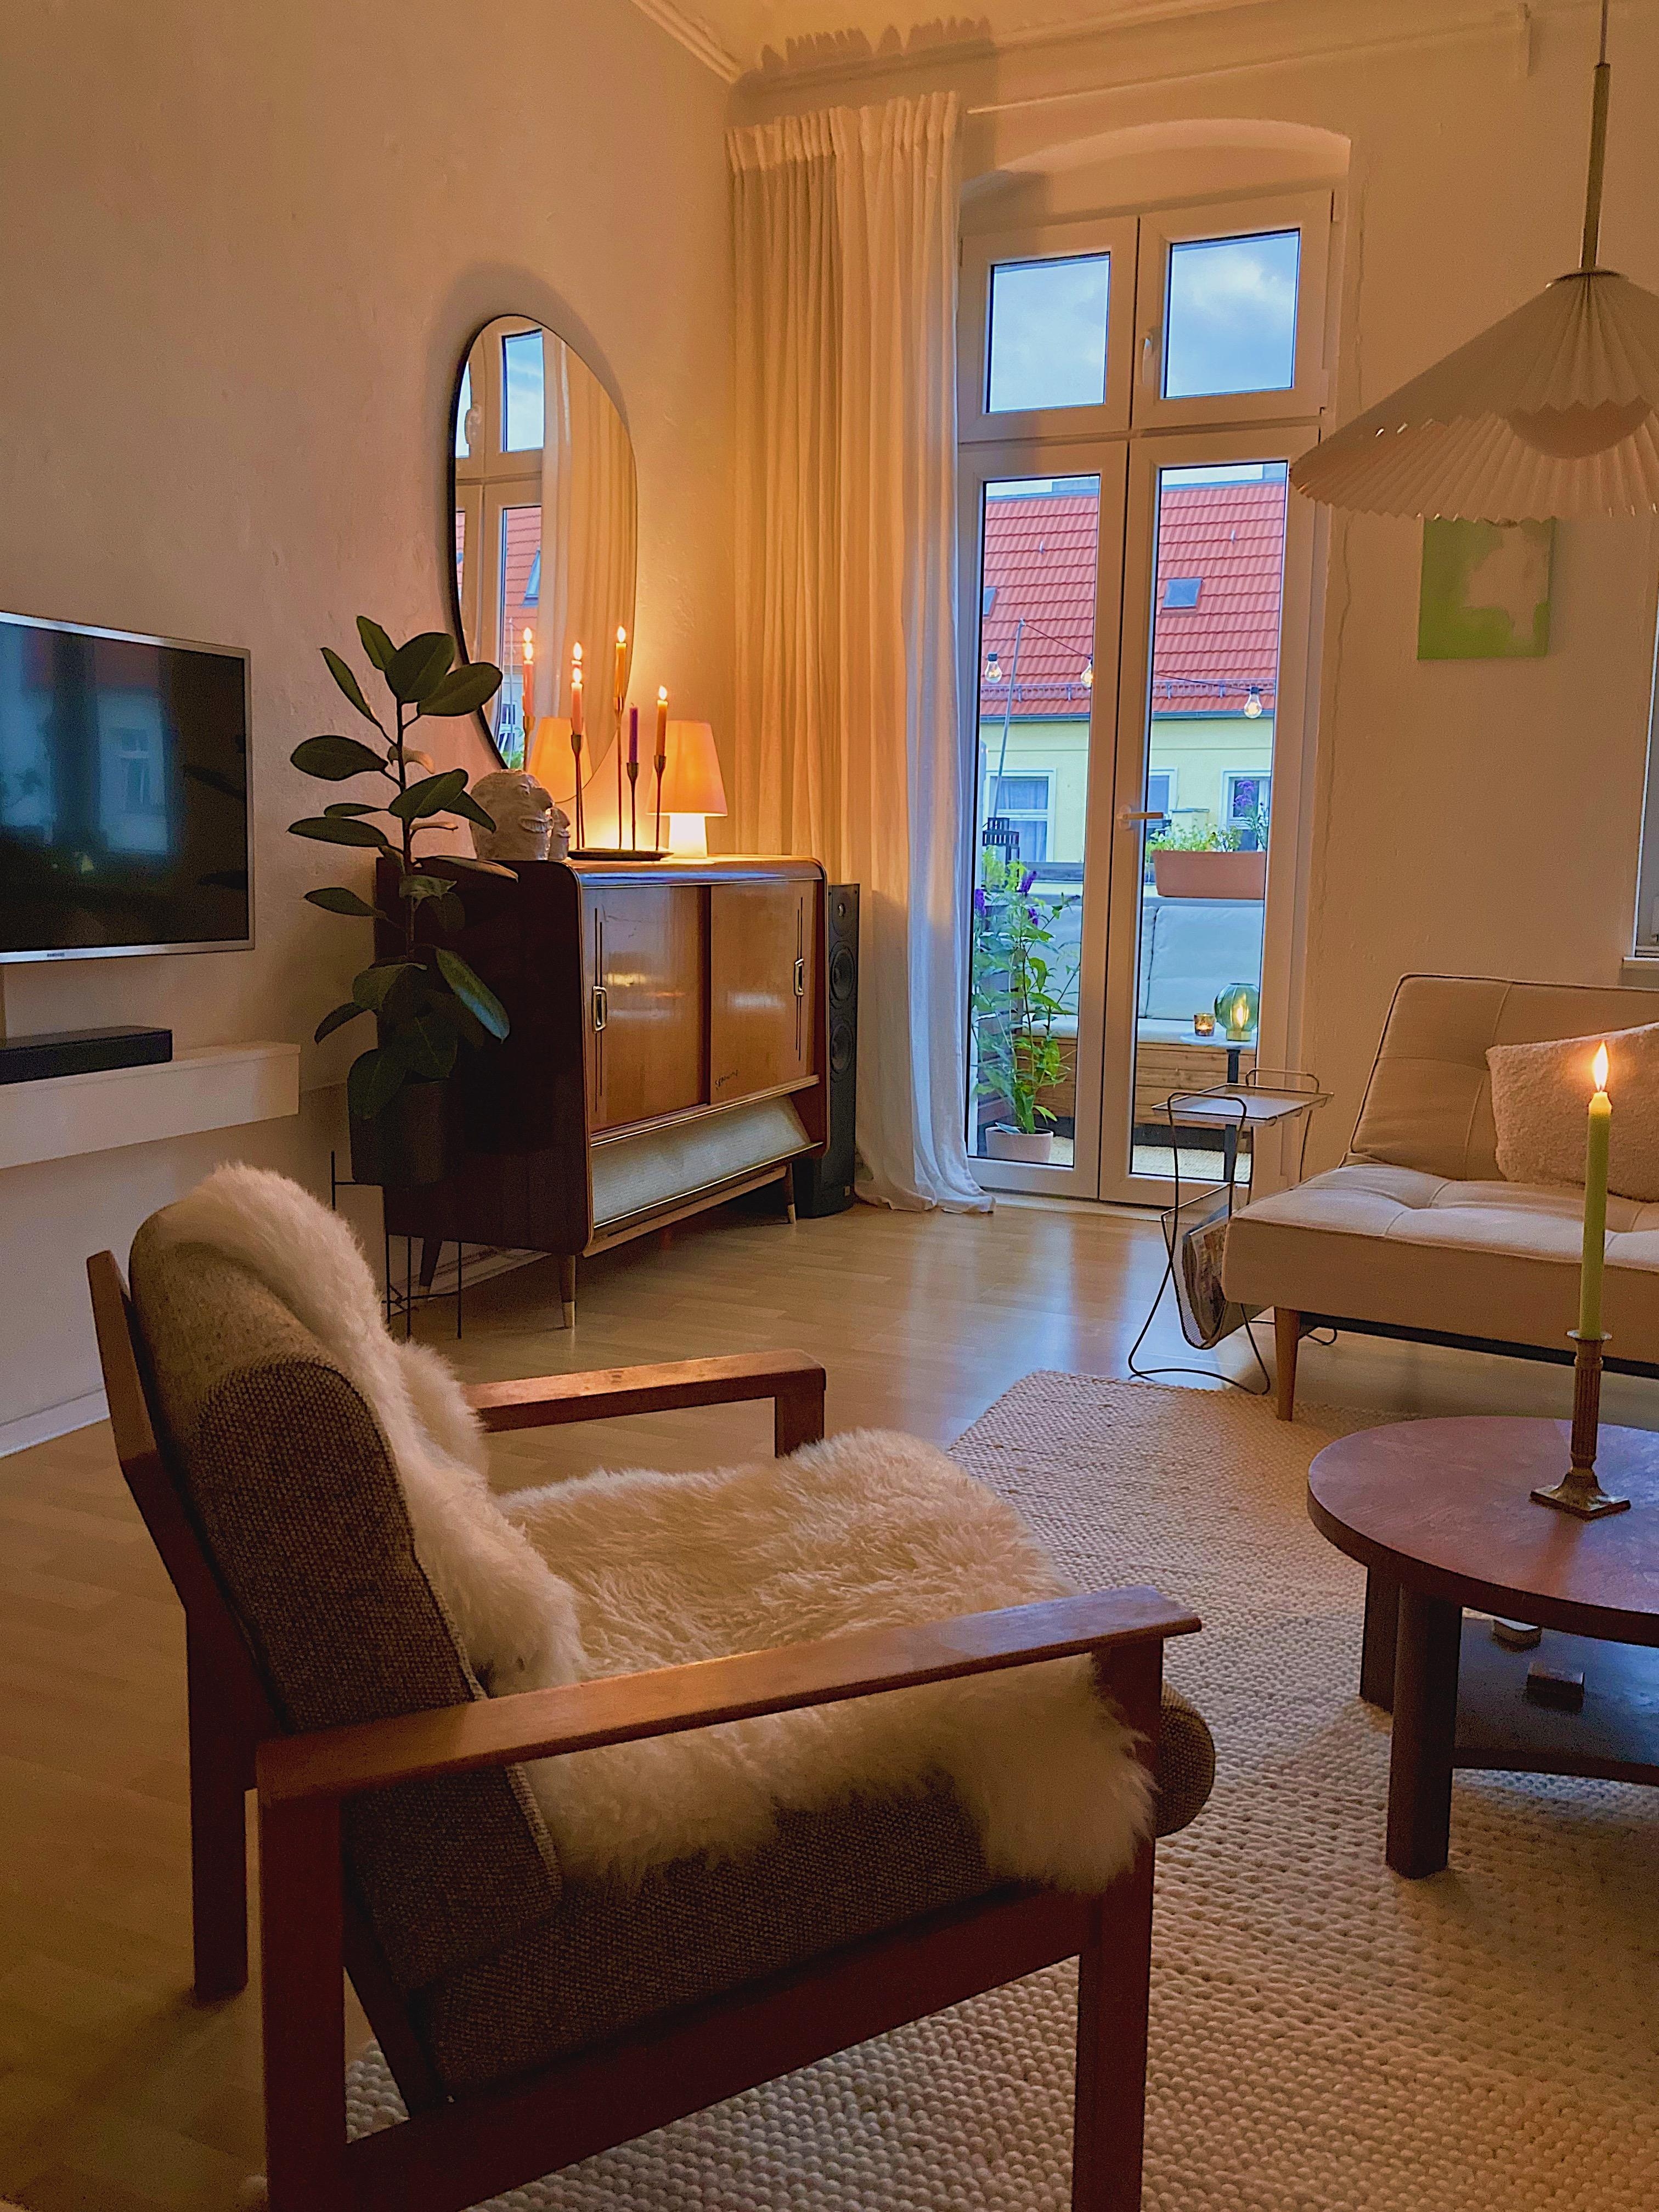 Bereit für den Herbst?
#wohnzimmer #livingroom #zuhause #vintage #vintagehome #midcentury #midcenturymodern